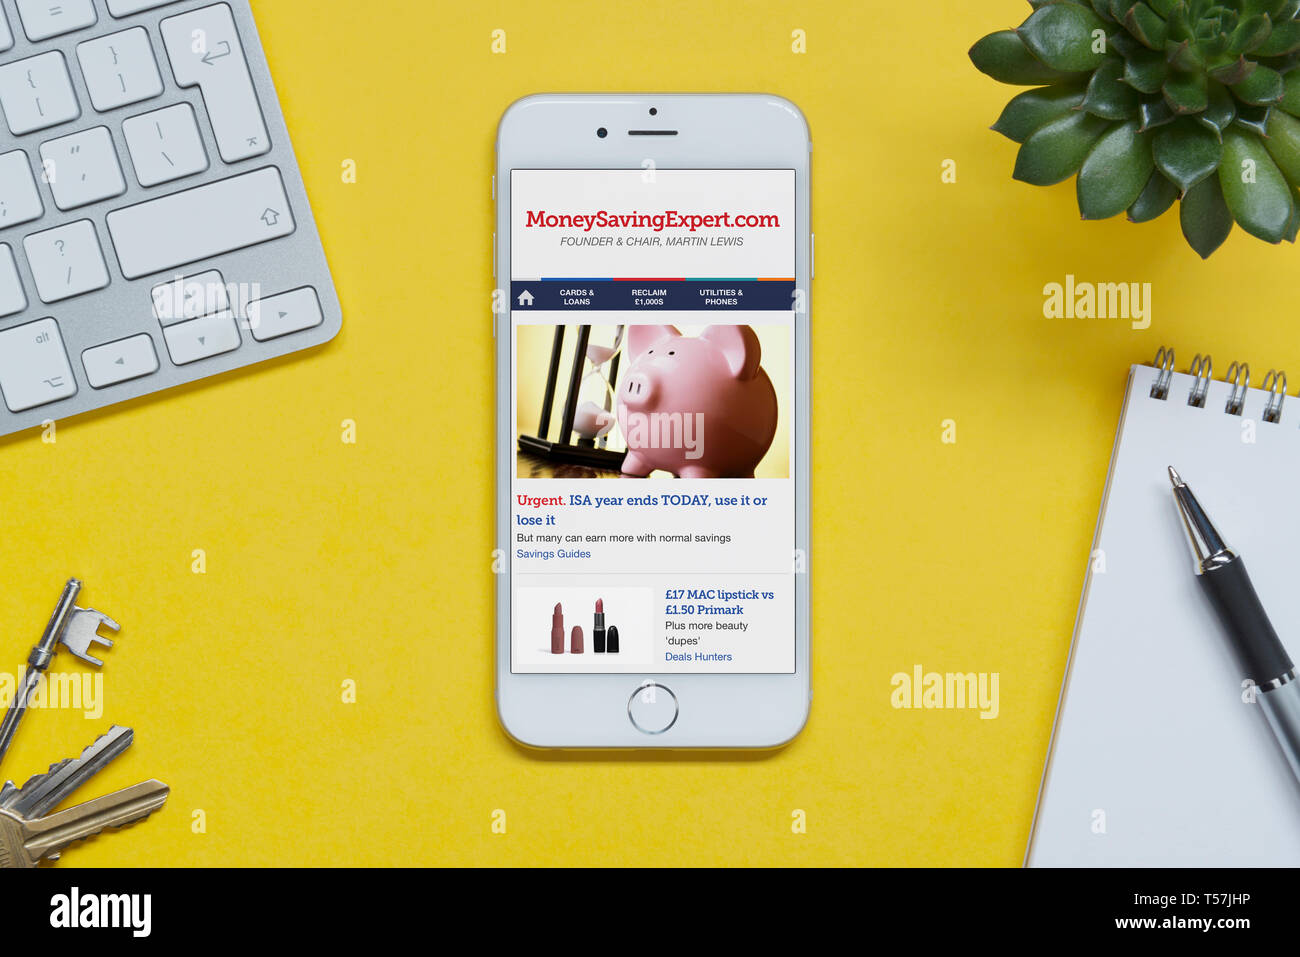 Ein iPhone mit dem Geld sparen Experte website ruht auf einem gelben Hintergrund Tabelle mit einer Tastatur, Tasten, Notepad und Anlage (nur redaktionelle Nutzung). Stockfoto